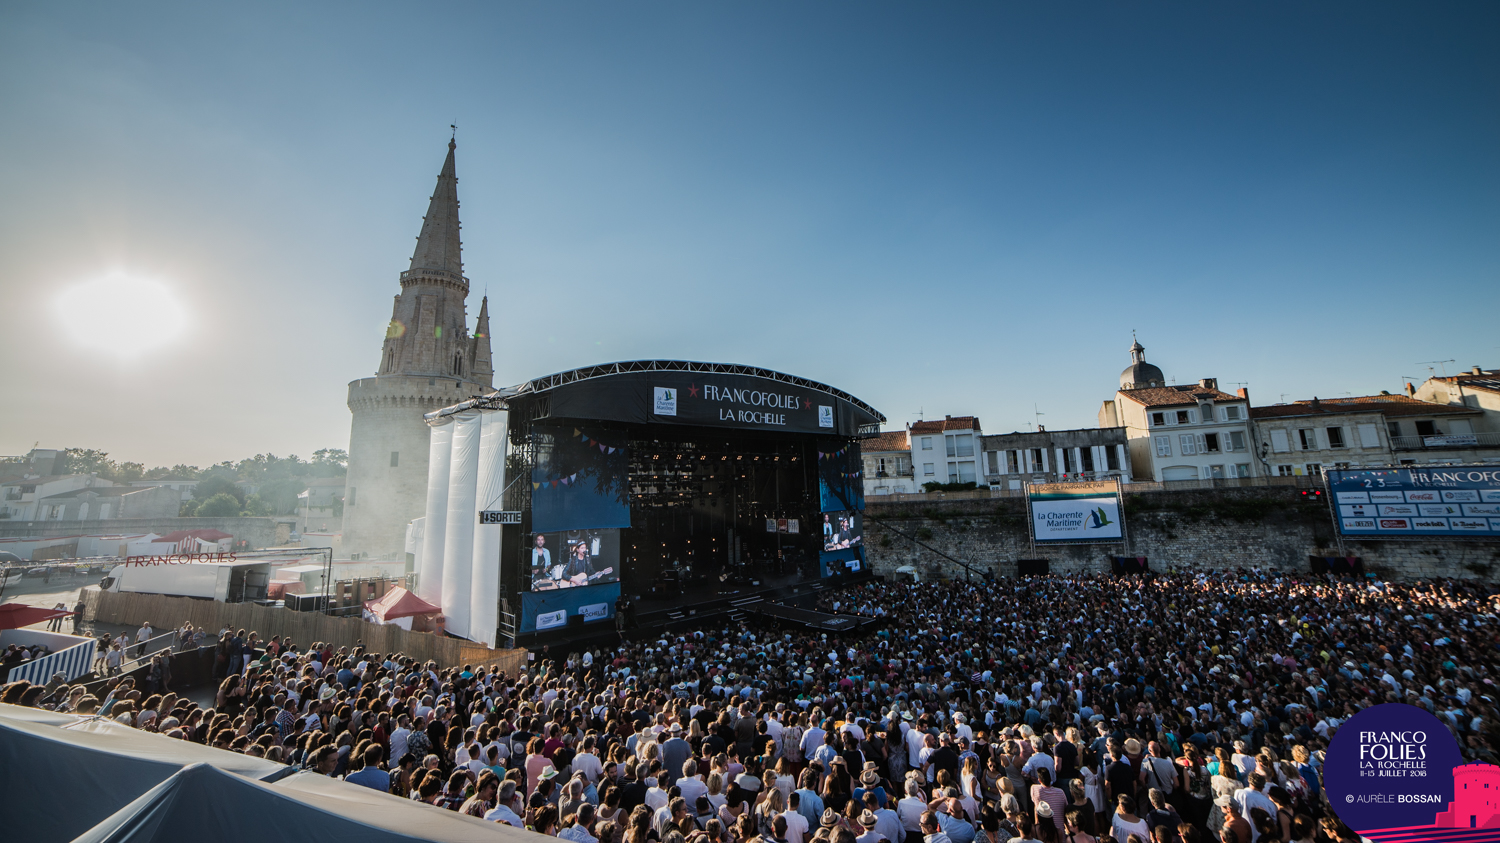 The important festivals of La Rochelle Office de tourisme de La Rochelle